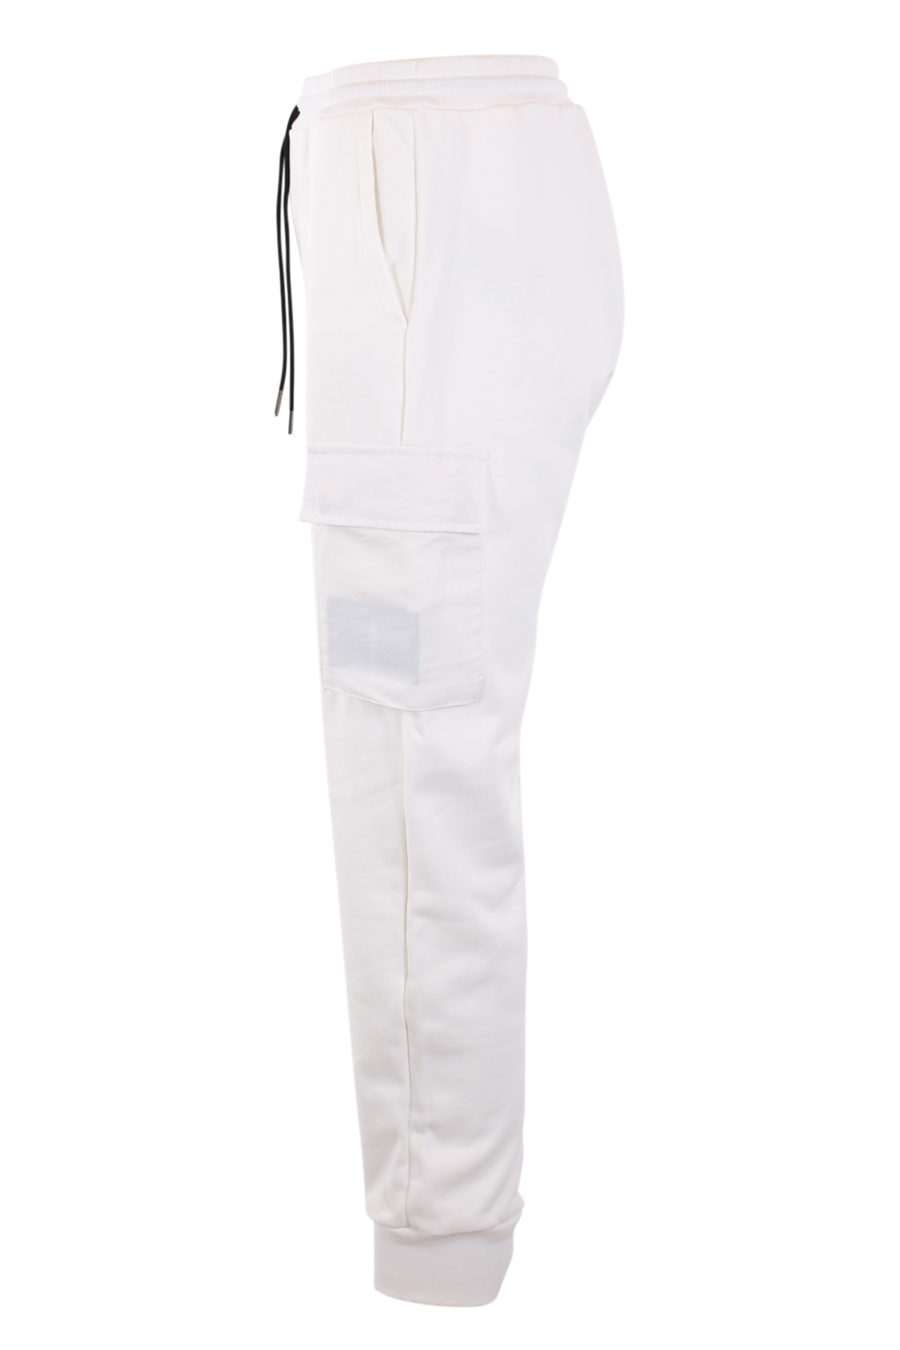 Pantalón de chándal blanco con bolsillos - IMG 0899